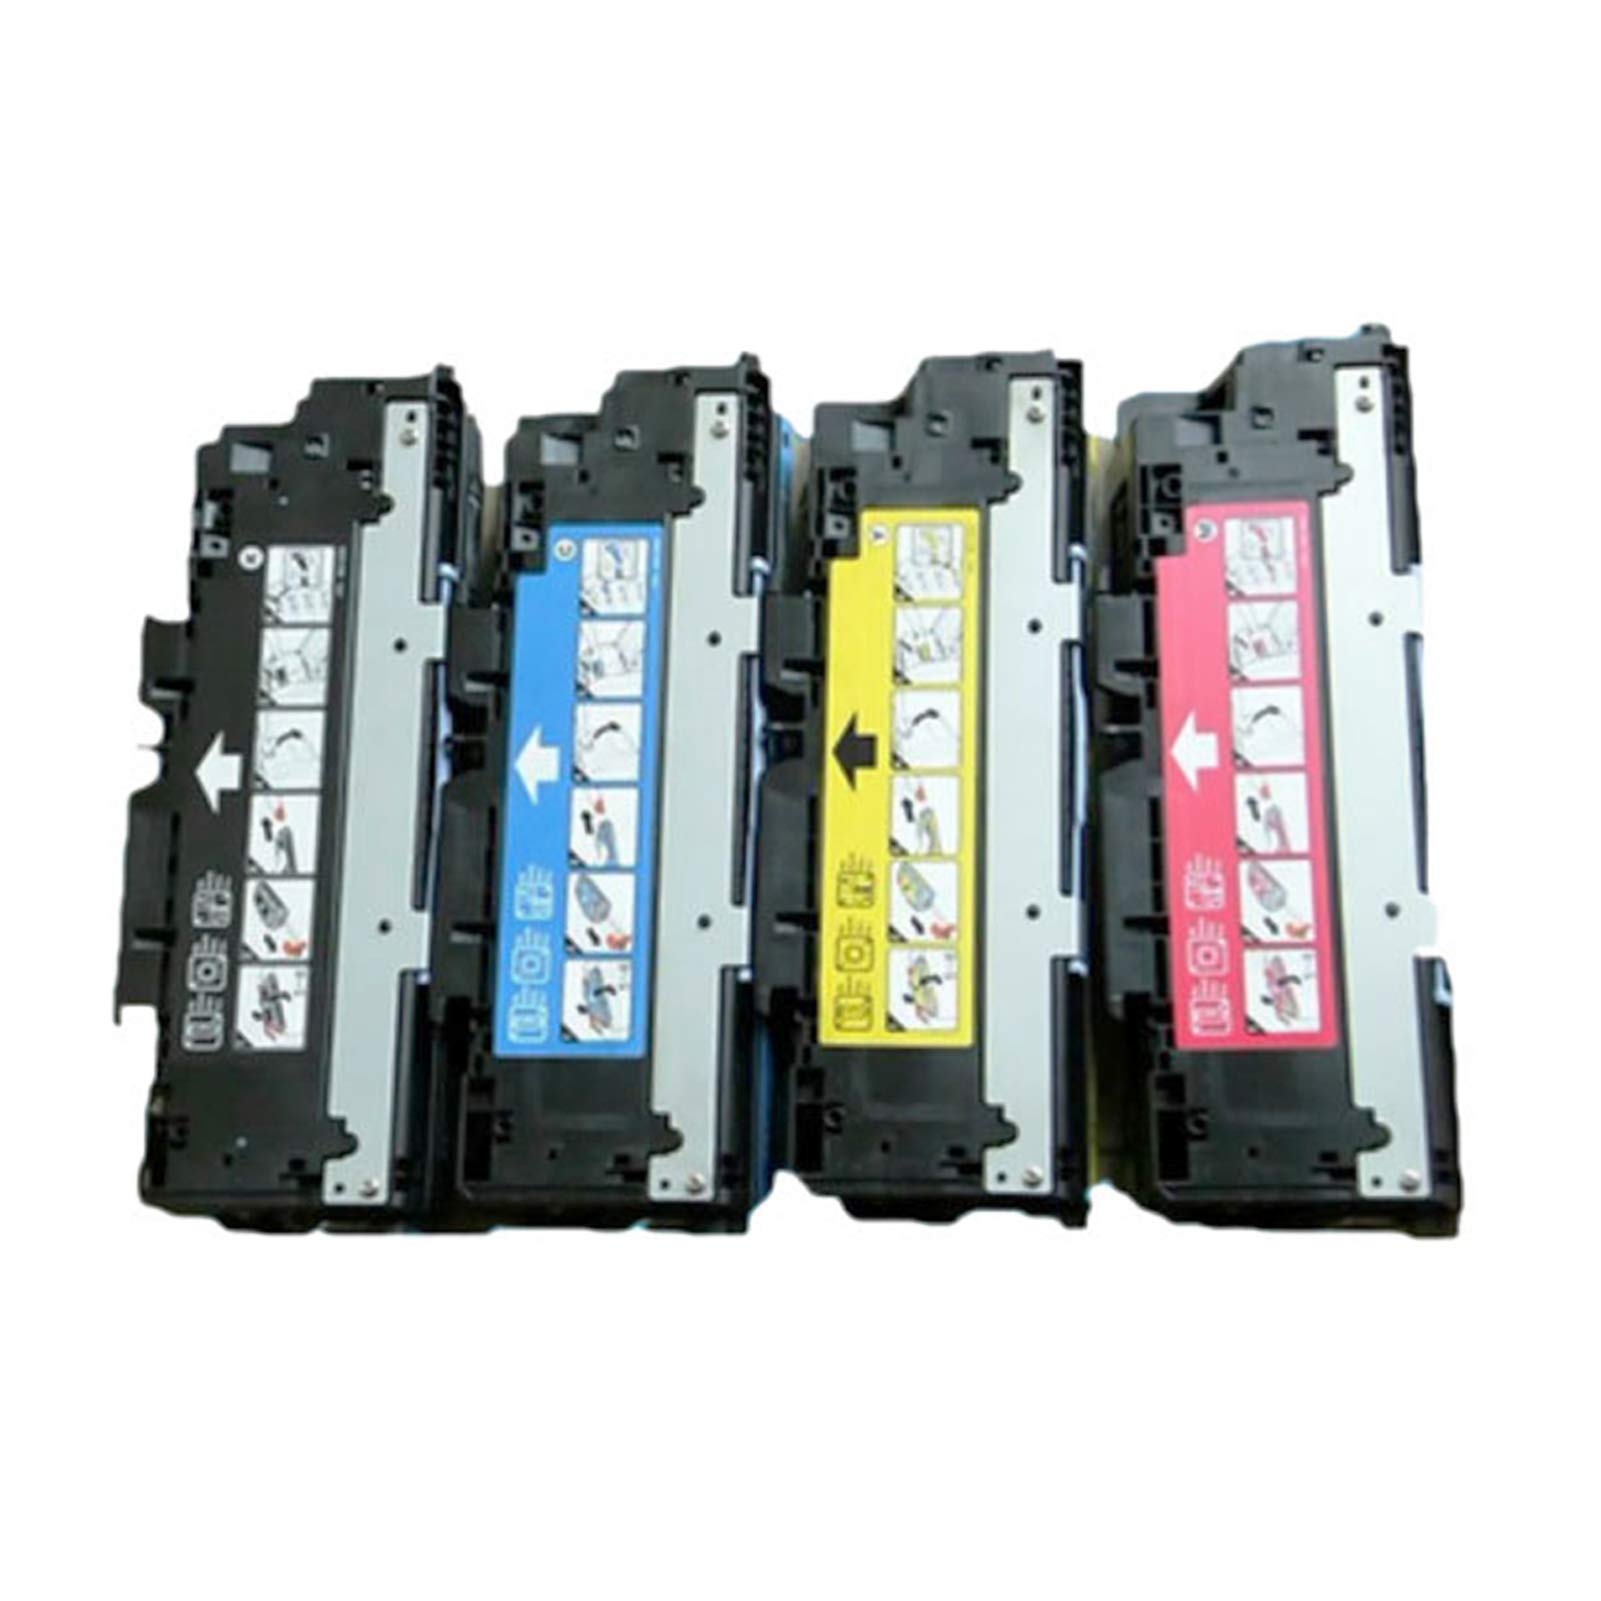 Toner Cartridge 308A Q2670A (1BK) | 309A Q2671A Q2672A Q2673A (1C+1Y+1M) Compatible with HP Color Laserjet 3500 3500N 3550 3550N 3700 3700N 3700DN 3700DTN Printer-4-colors